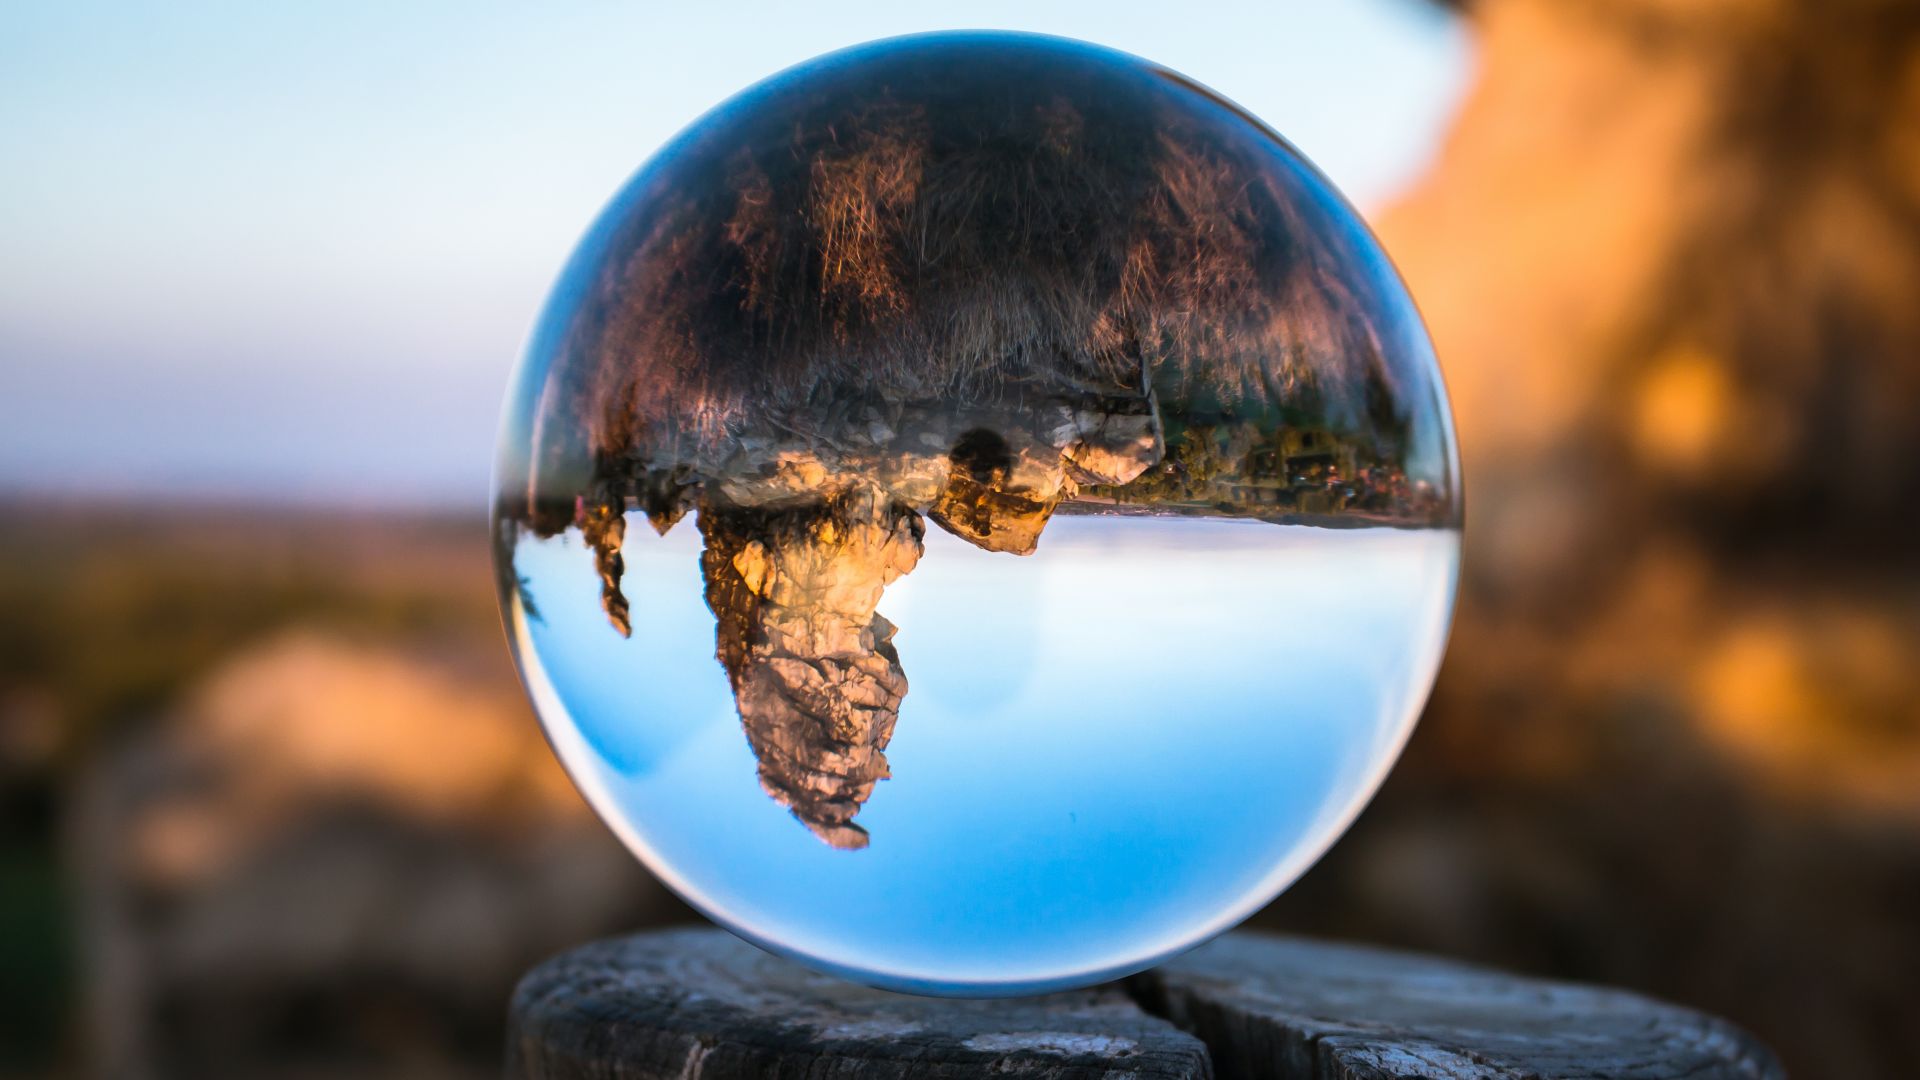 Wallpaper Koenigstein bowl glass tree stump reflection mountains